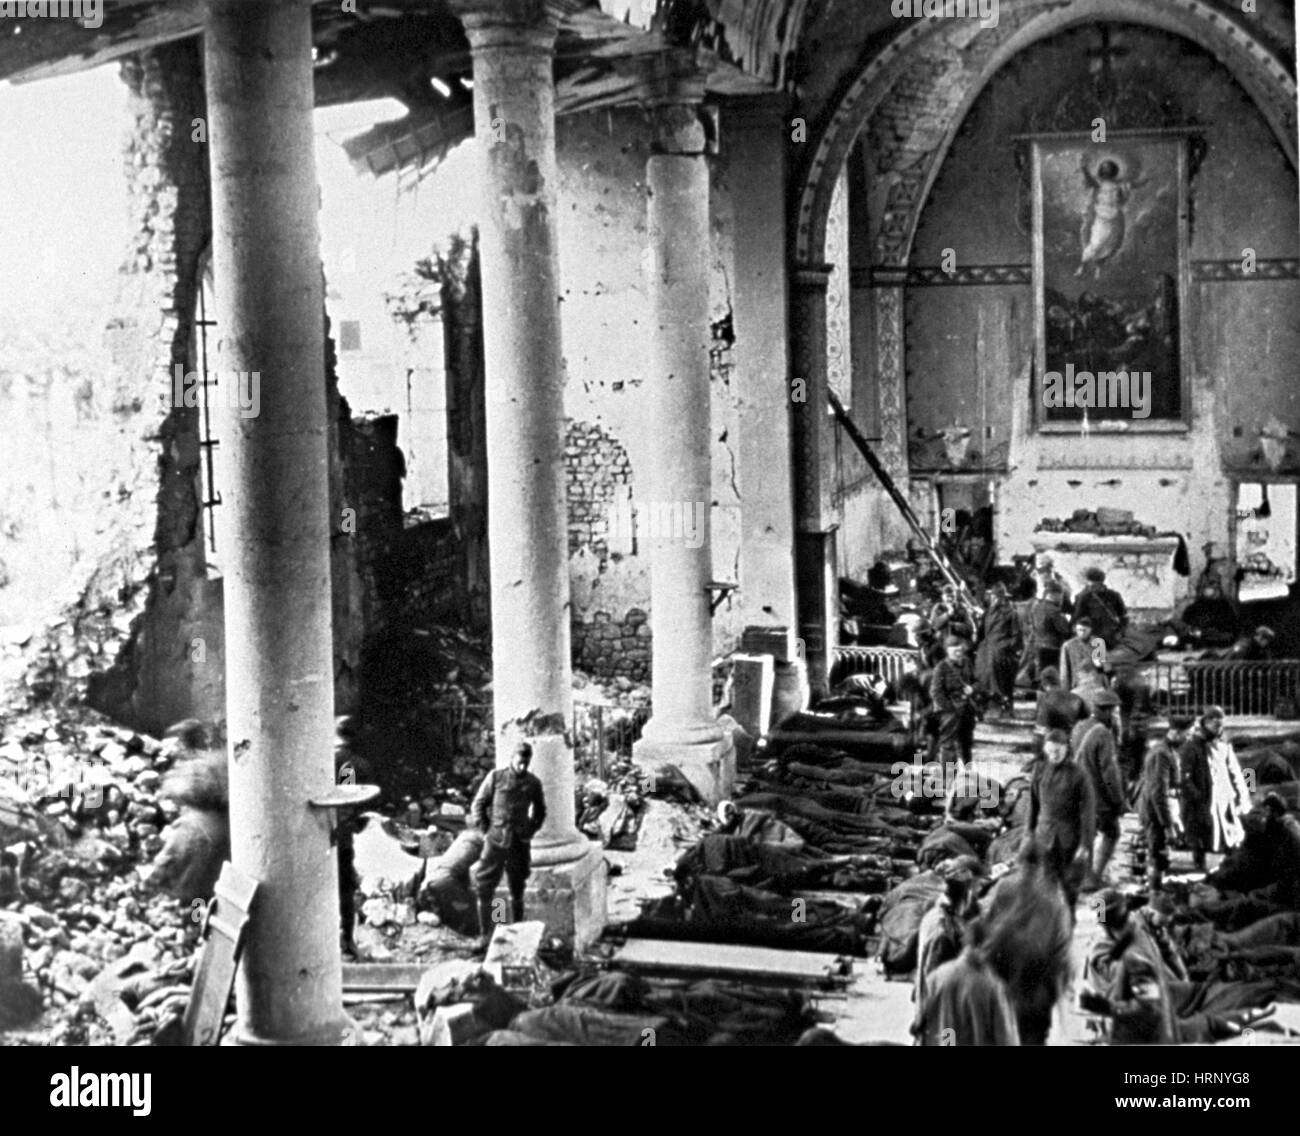 La PREMIÈRE GUERRE MONDIALE, poste de premiers soins dans l'église bombardée, 1918 Banque D'Images